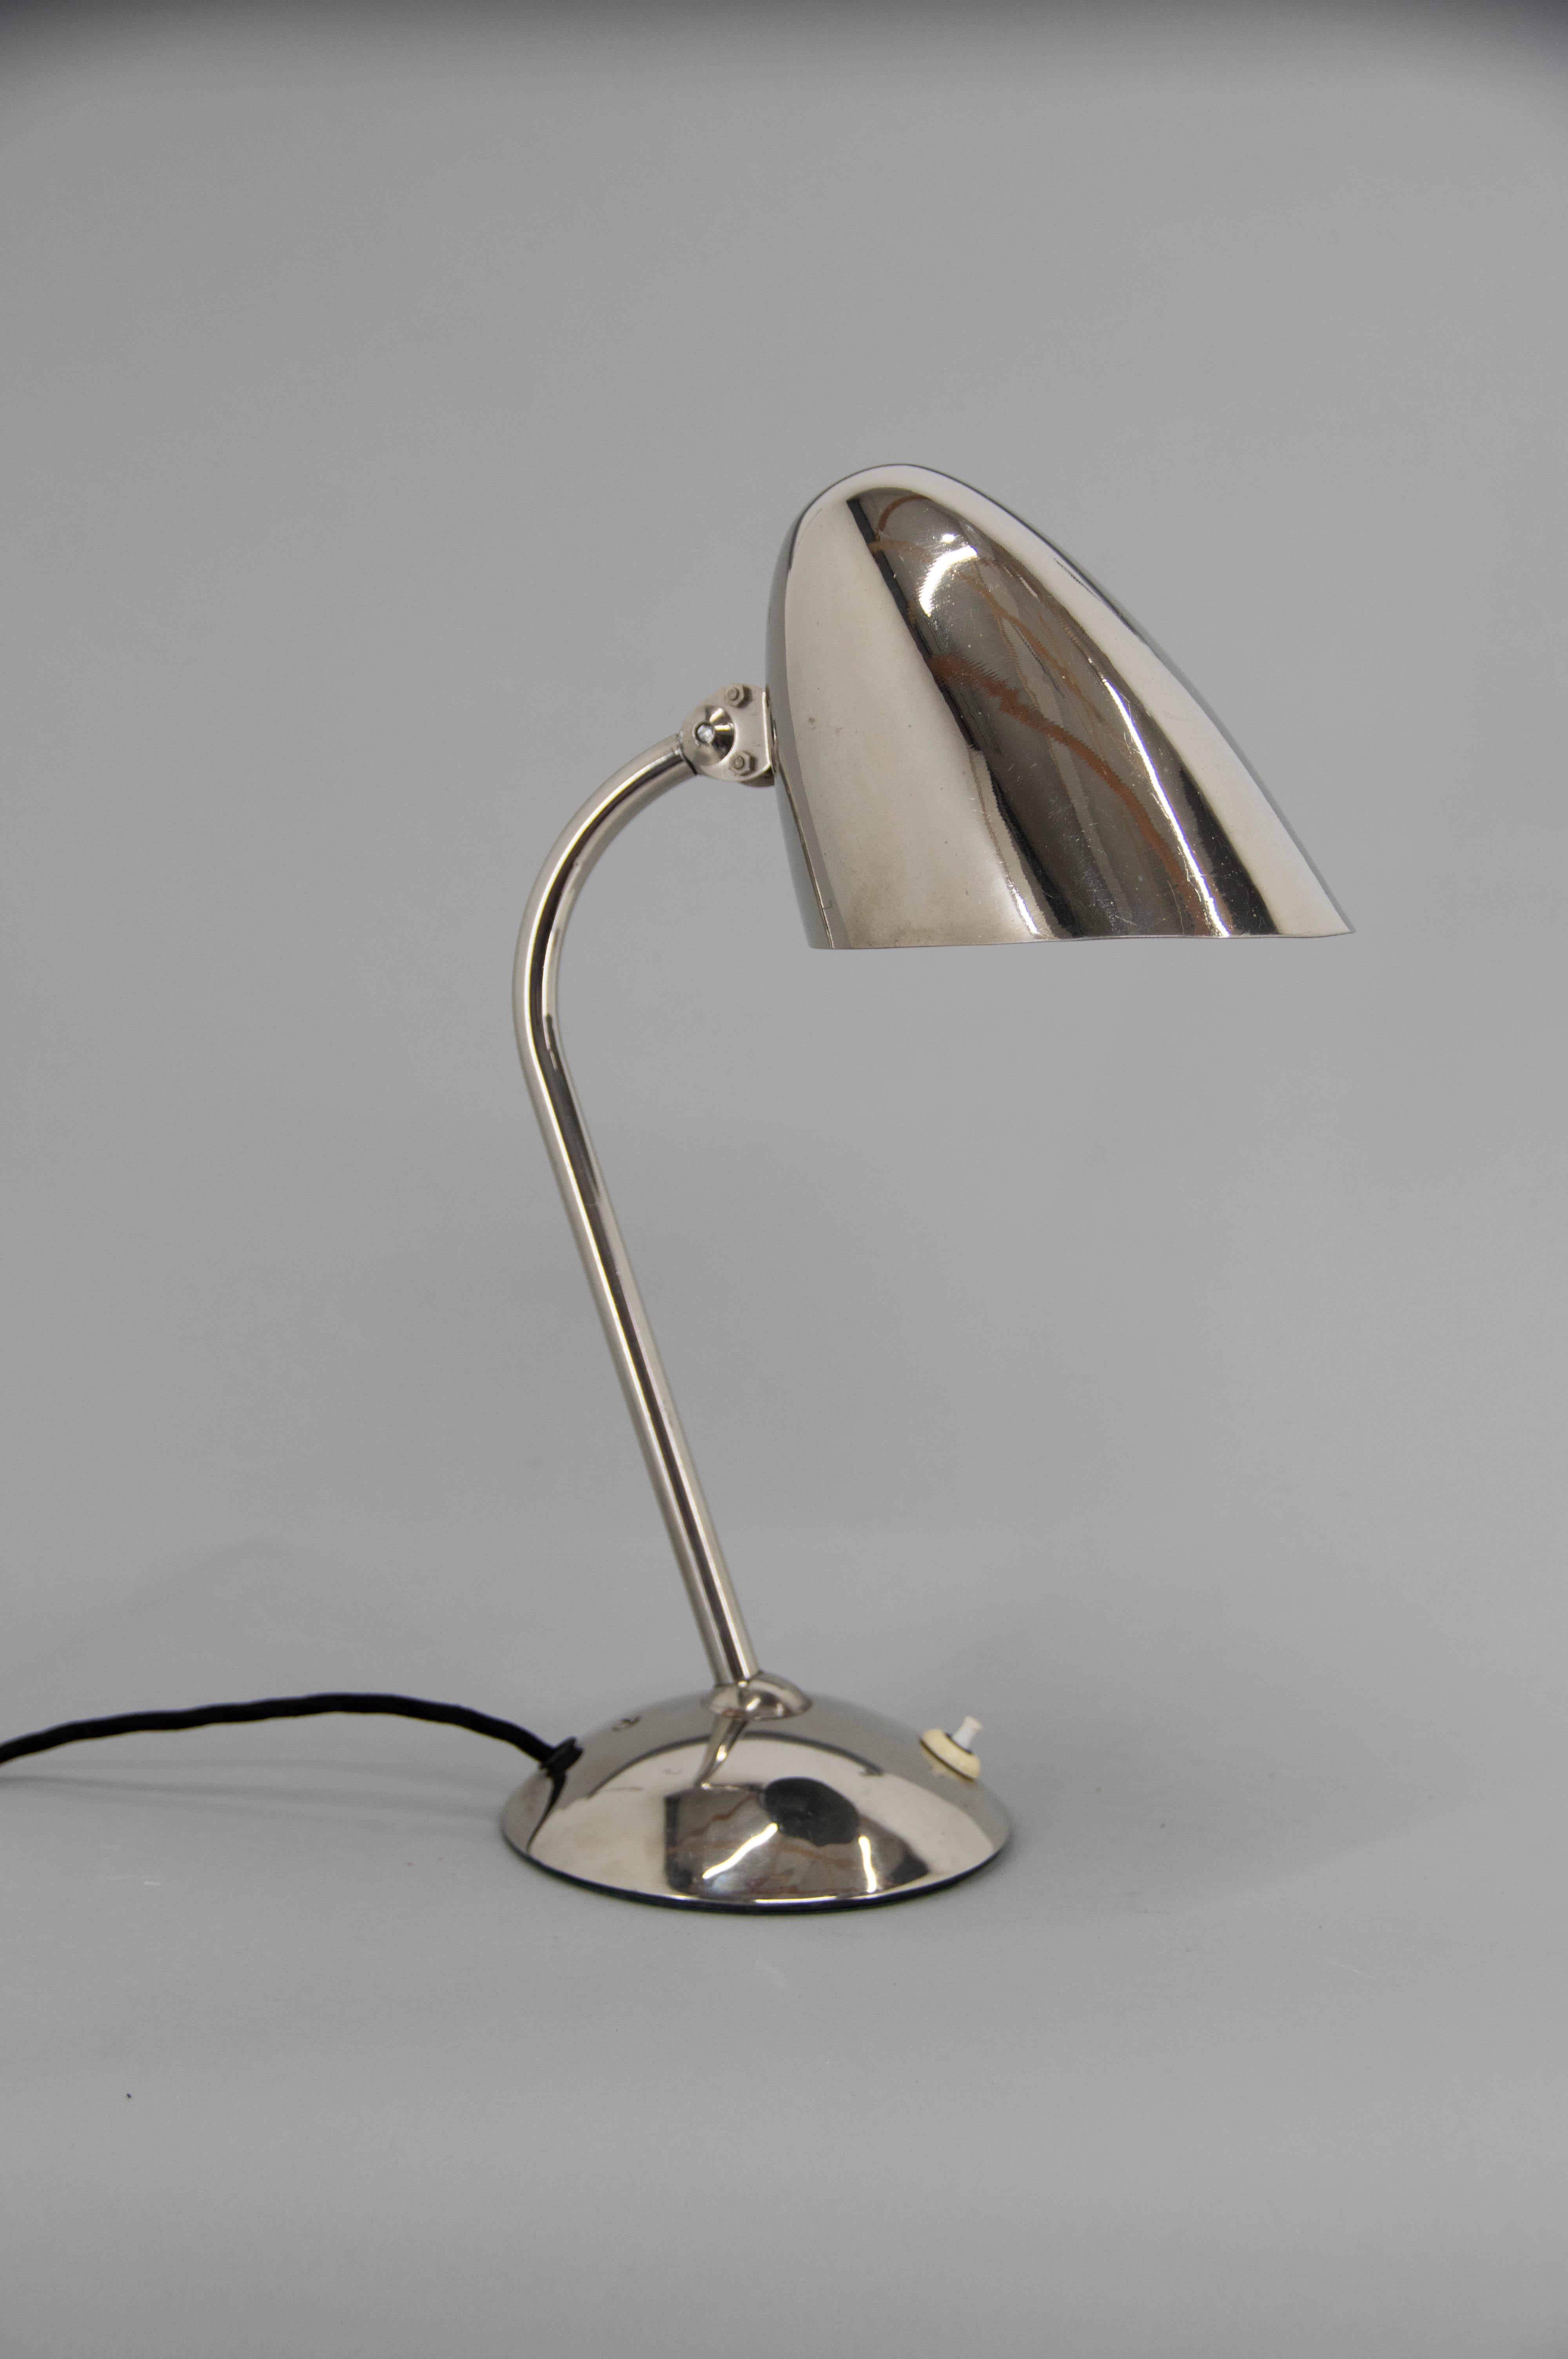 Lampe de table iconique de Franta Anyz. Version nickelée très bien conservée.
Cette lampe est célèbre pour ses joints Anyz brevetés qui rendent l'abat-jour aussi flexible que possible.
1x40W, ampoule E25-E27
Adaptateur pour prise américaine